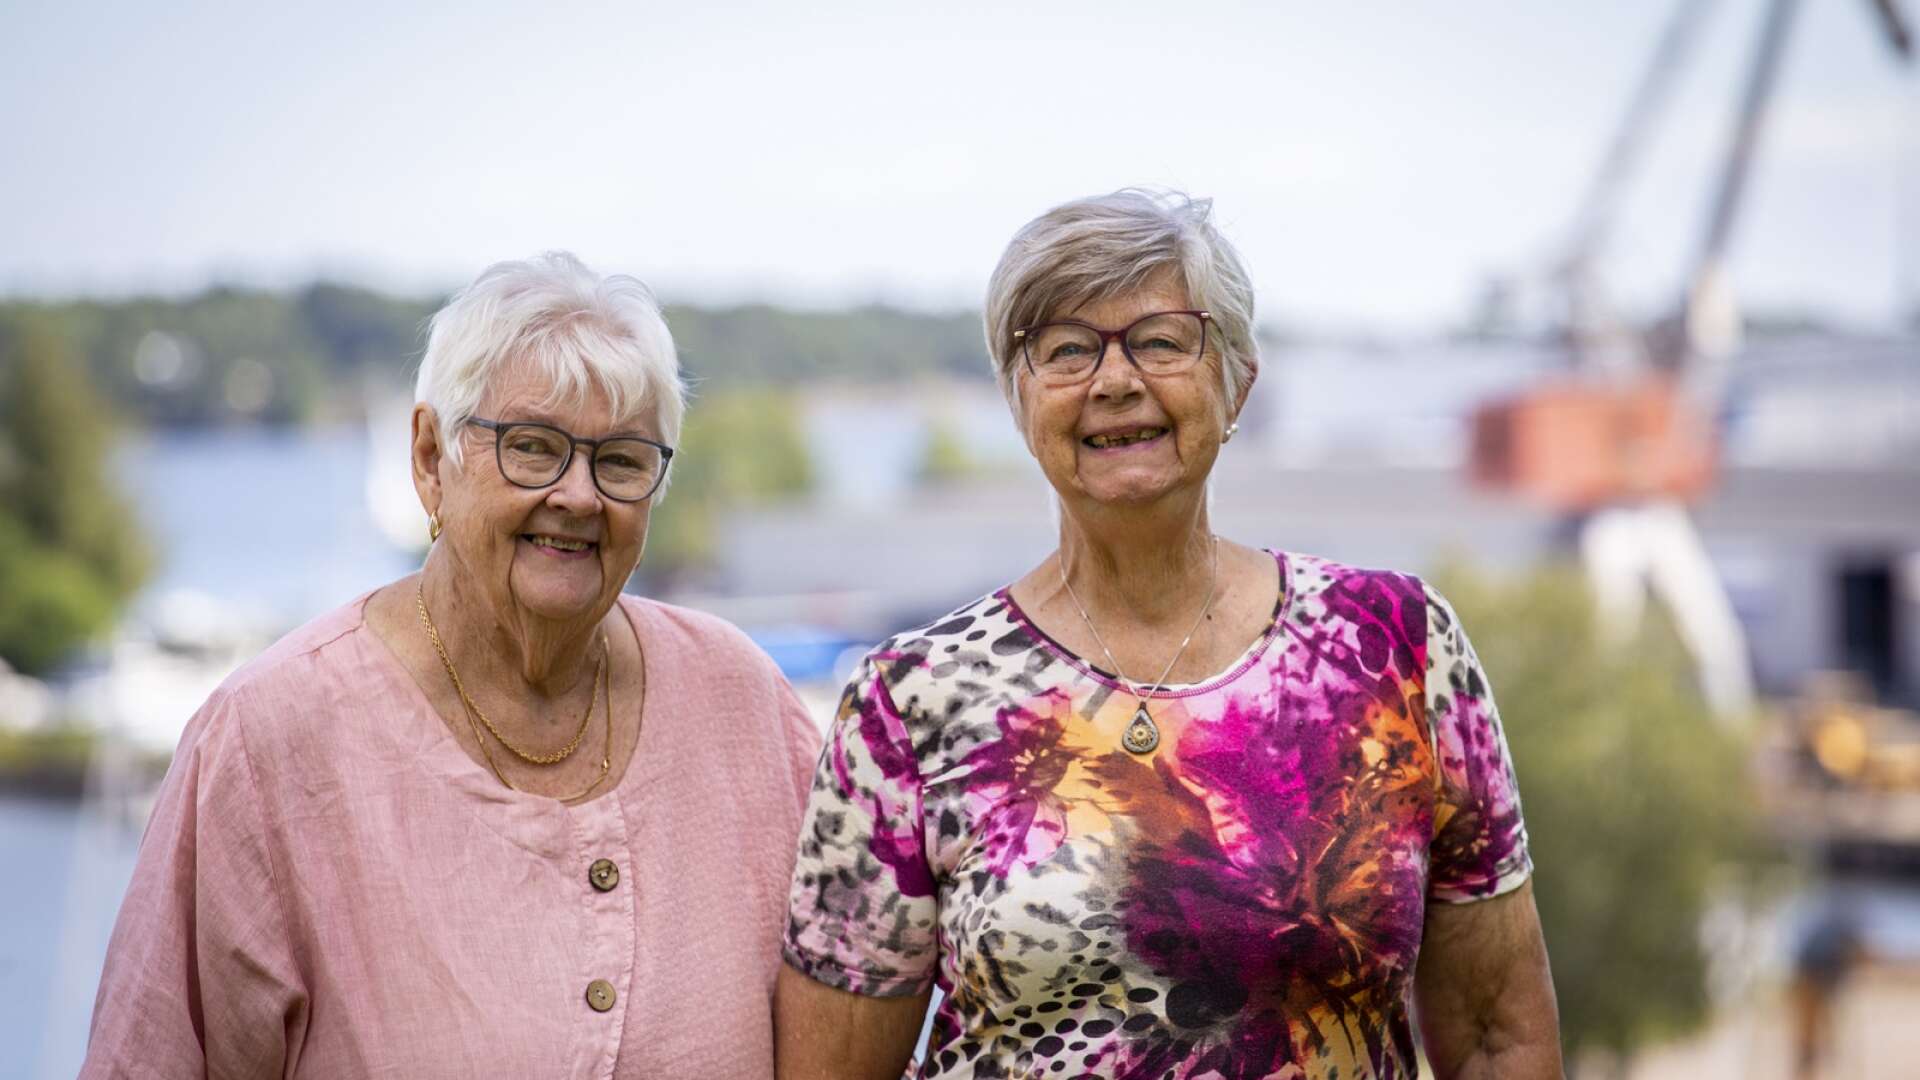 Gun Joelsson och Torgerd Kronborg, födda och uppvuxna i Åmål, har varit vänner i 80 år. Trots att de numera bor med nästan 100 mils avstånd mellan varandra låter de sig inte hindras.